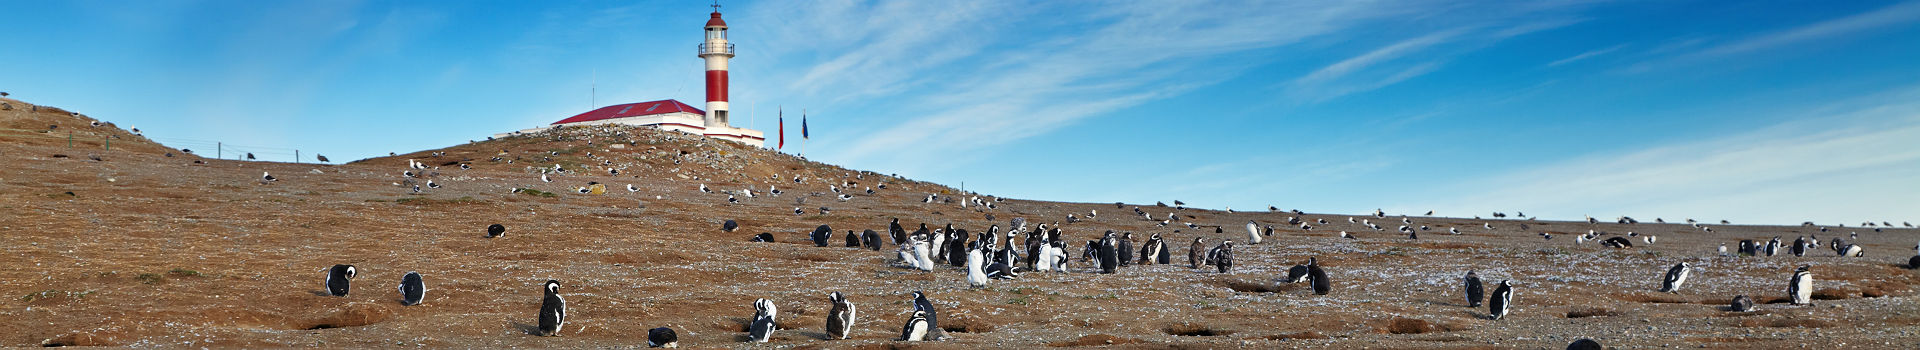 Pingouins sur l'Île Magdalena dans le détroit de Magellan - Chili